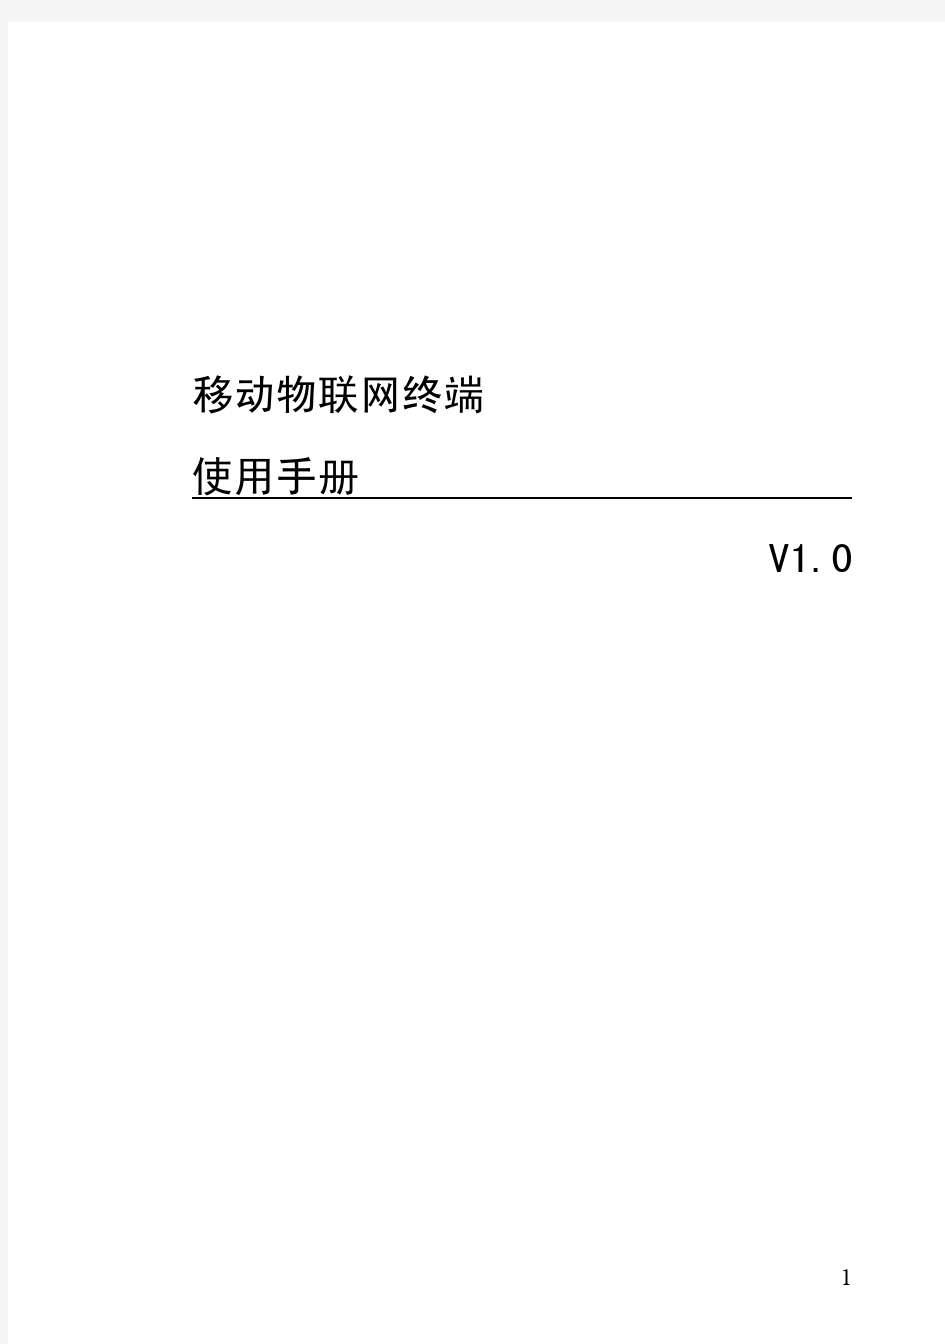 移动物联网终端使用手册V1.0